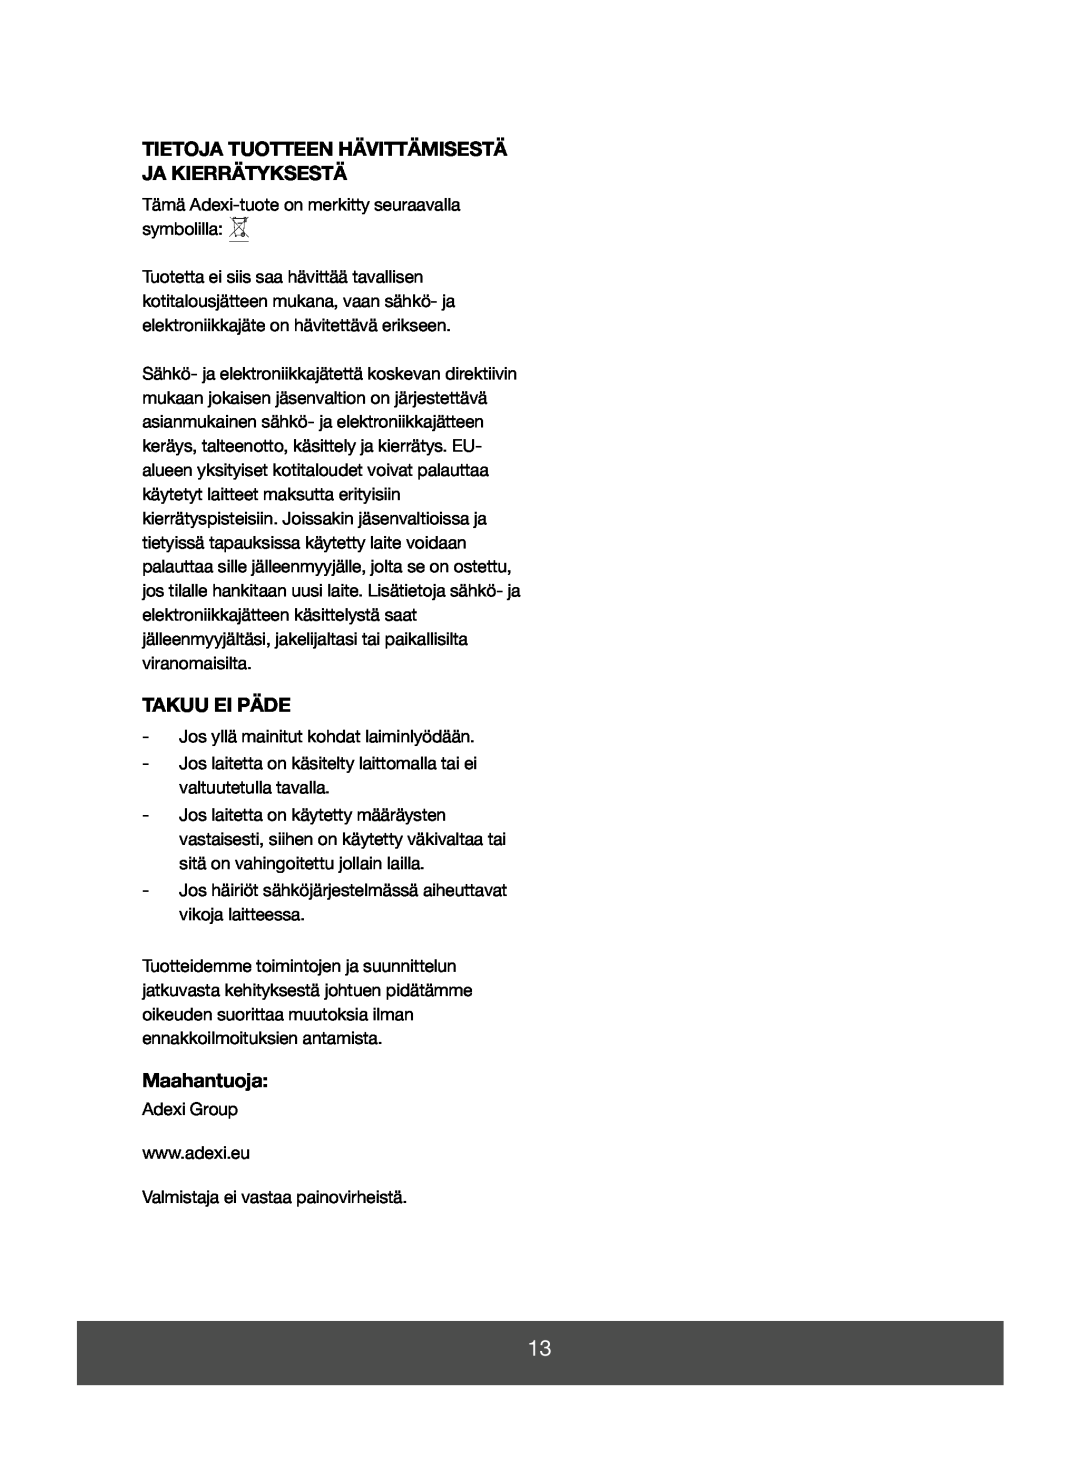 Melissa 643-008 manual Tietoja Tuotteen Hävittämisestä Ja Kierrätyksestä, Takuu Ei Päde, Maahantuoja 